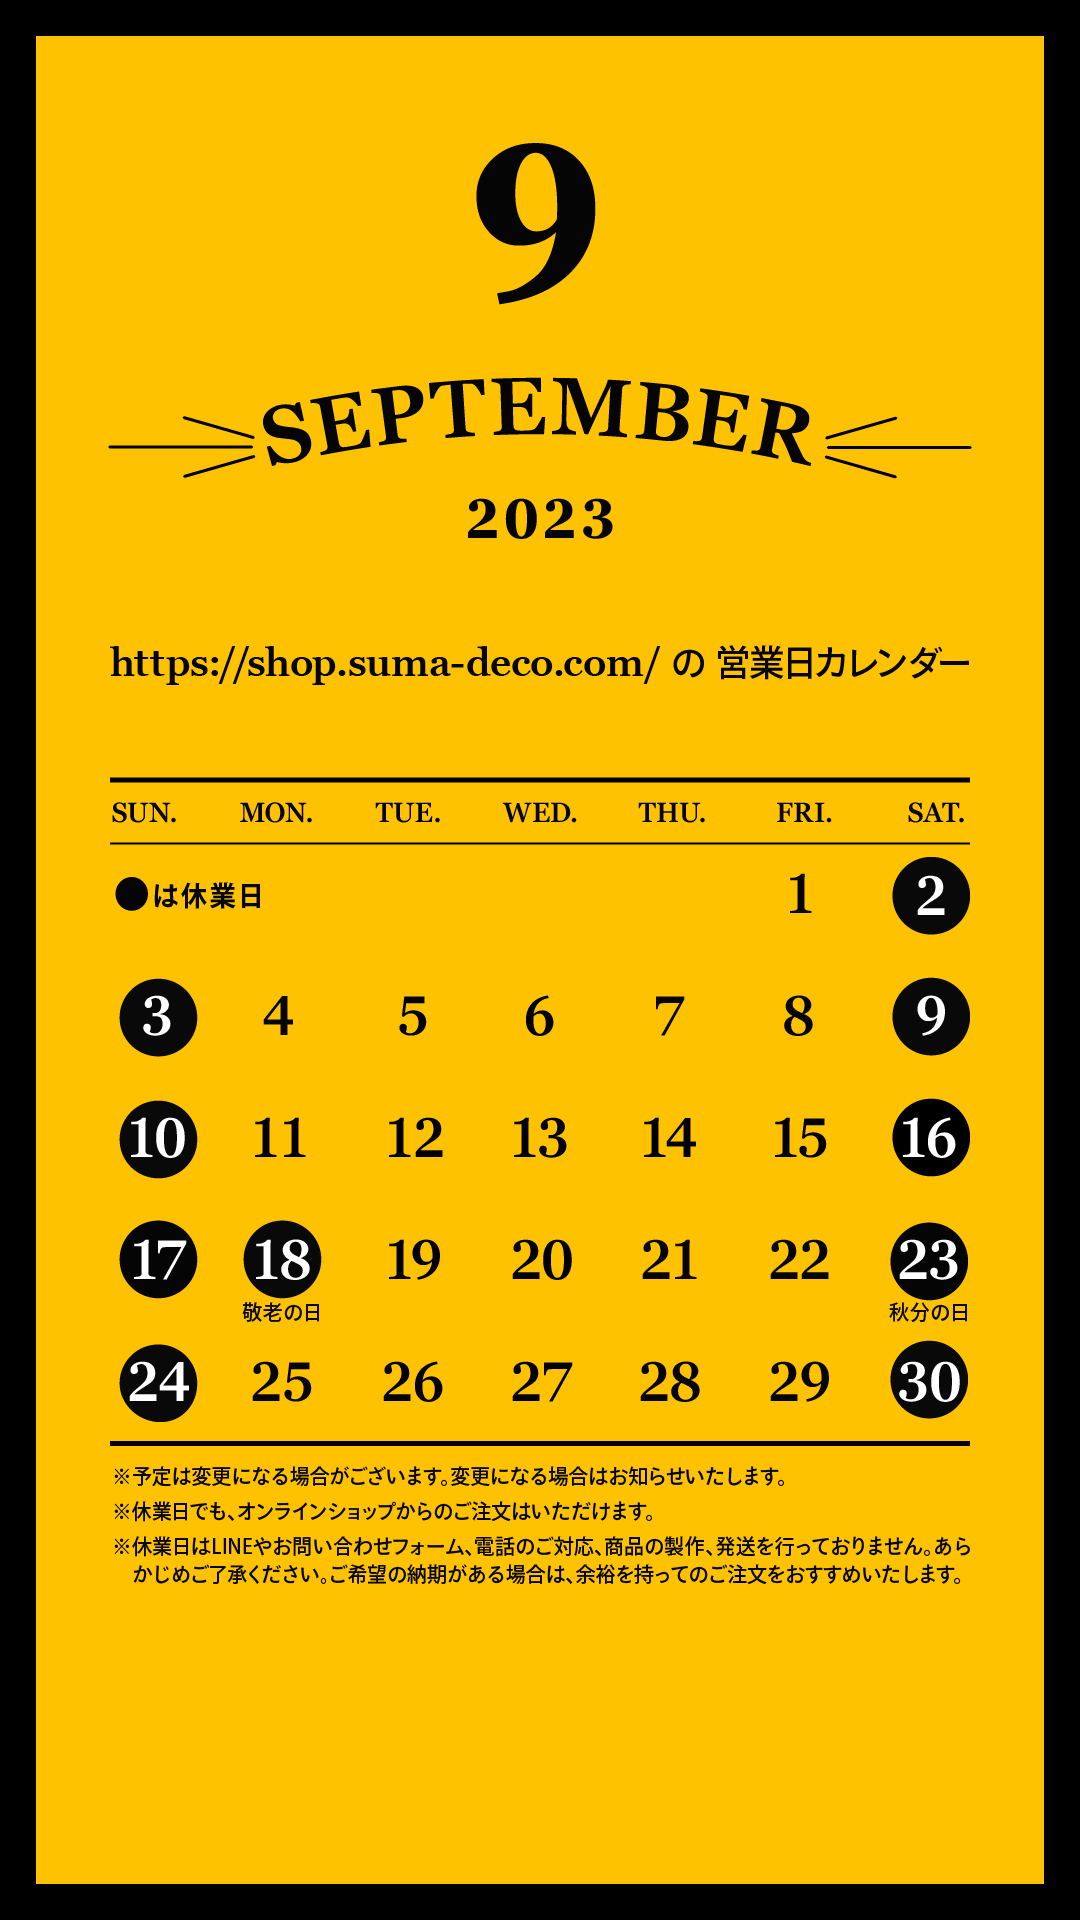 2023年9月の営業日カレンダーと敬老の日ご注文の締切日